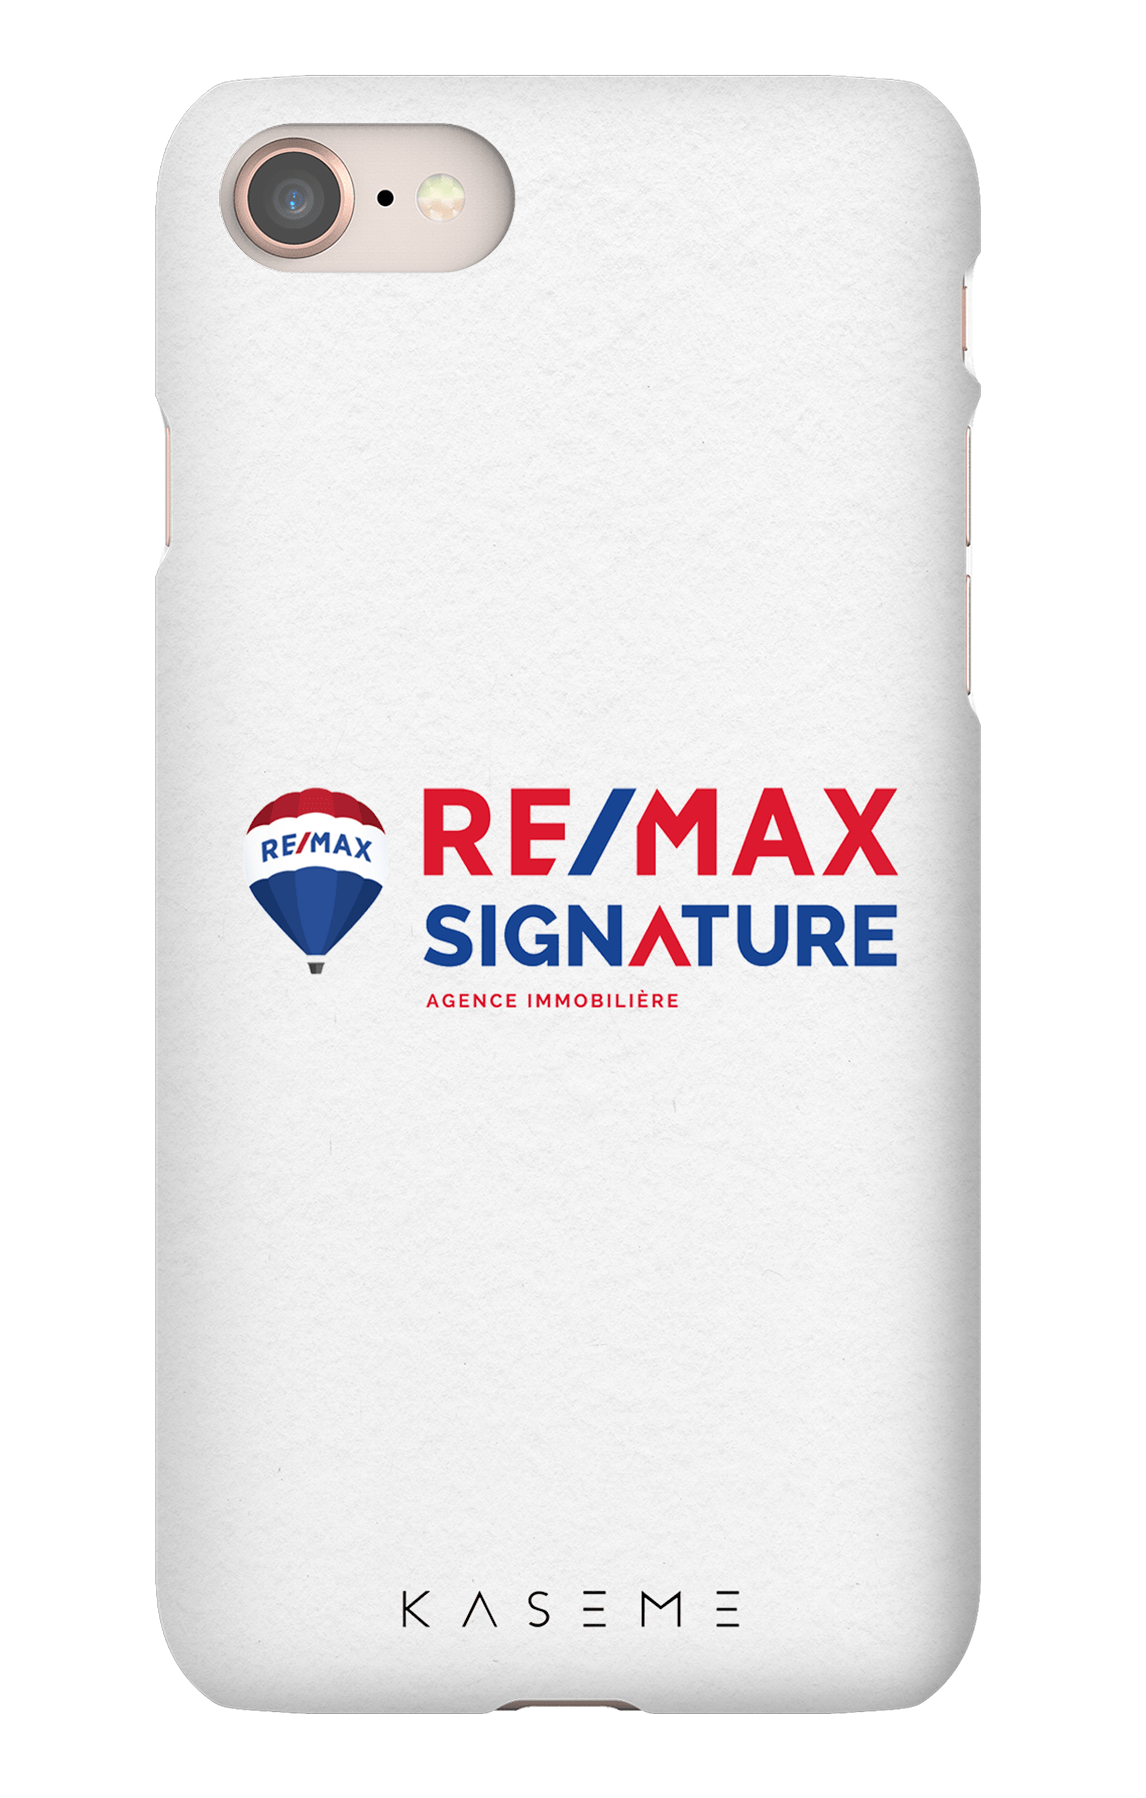 Remax Signature Blanc - iPhone SE 2020